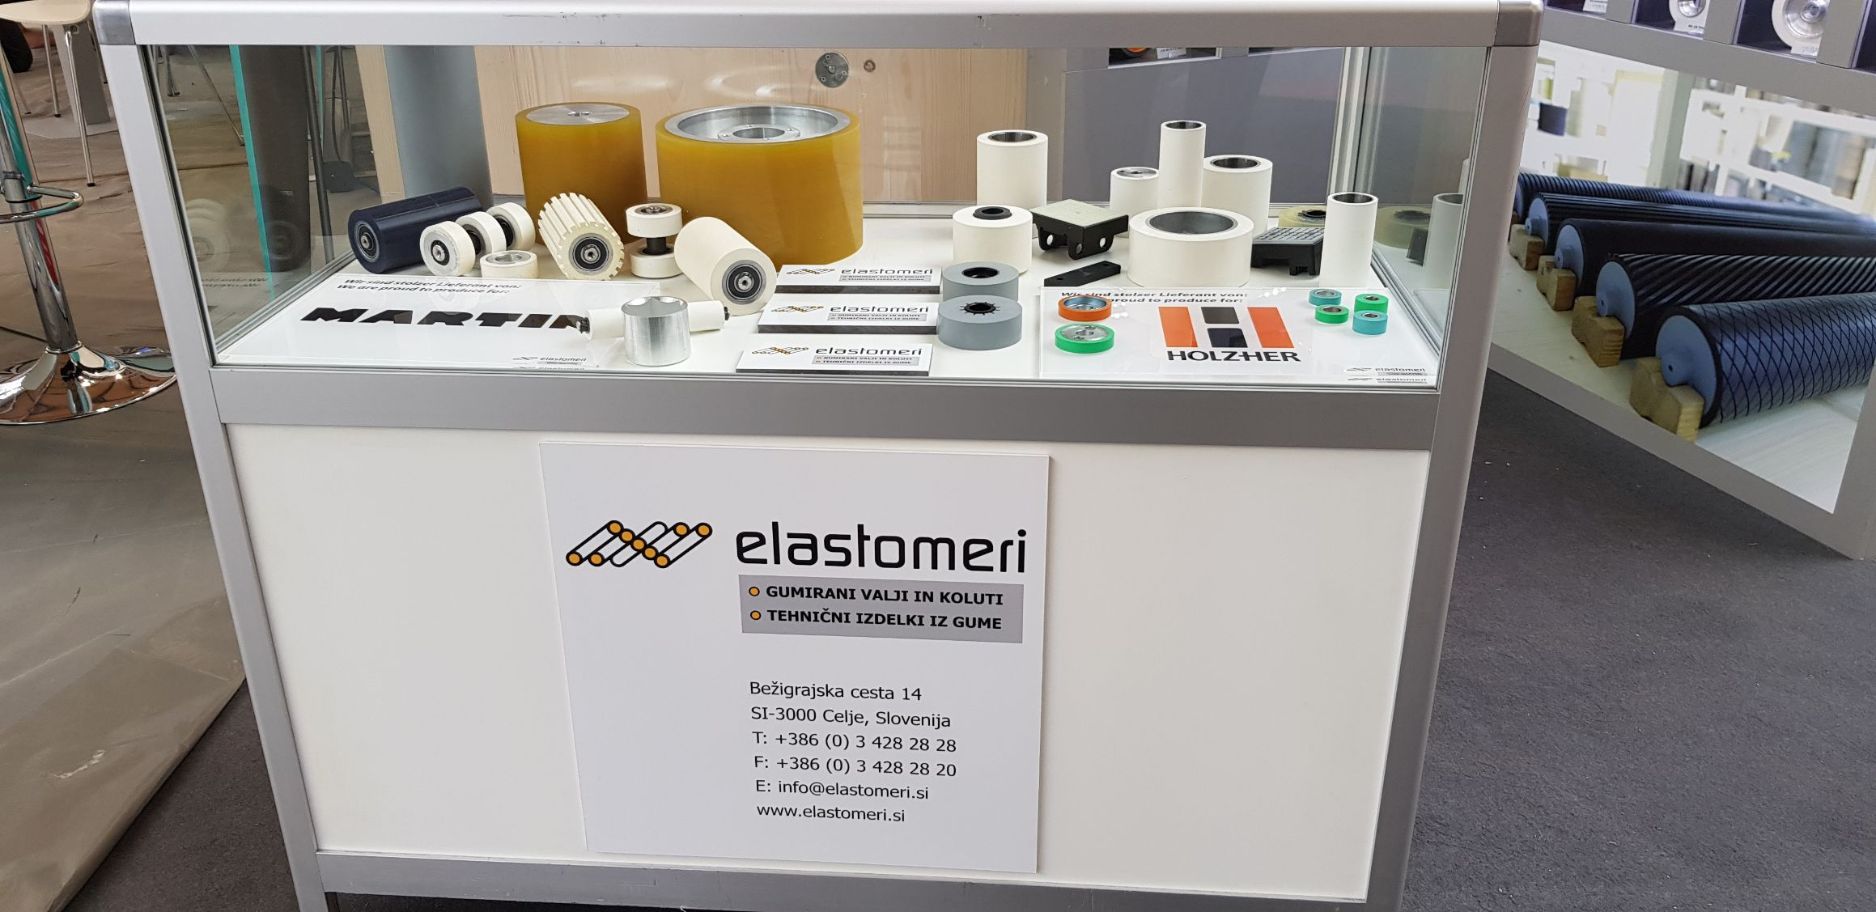 Elastomeri, od leta 1977